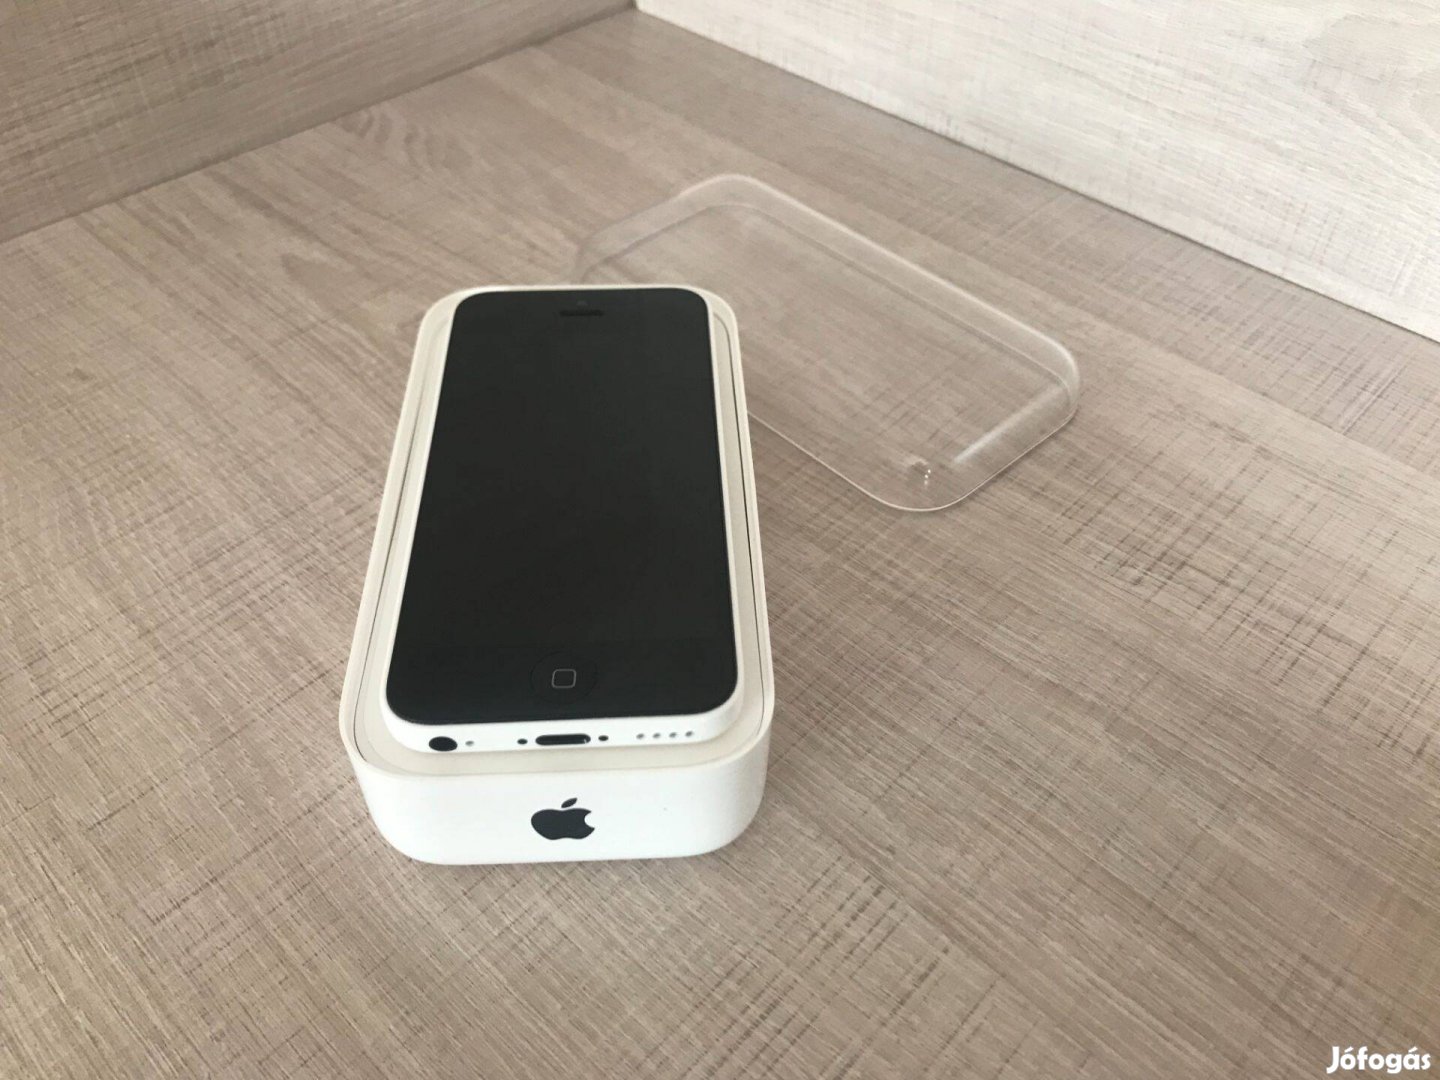 Apple Iphone 5C 8GB, Új tartozékok, Új kiegészítők, 100% akkumulátor